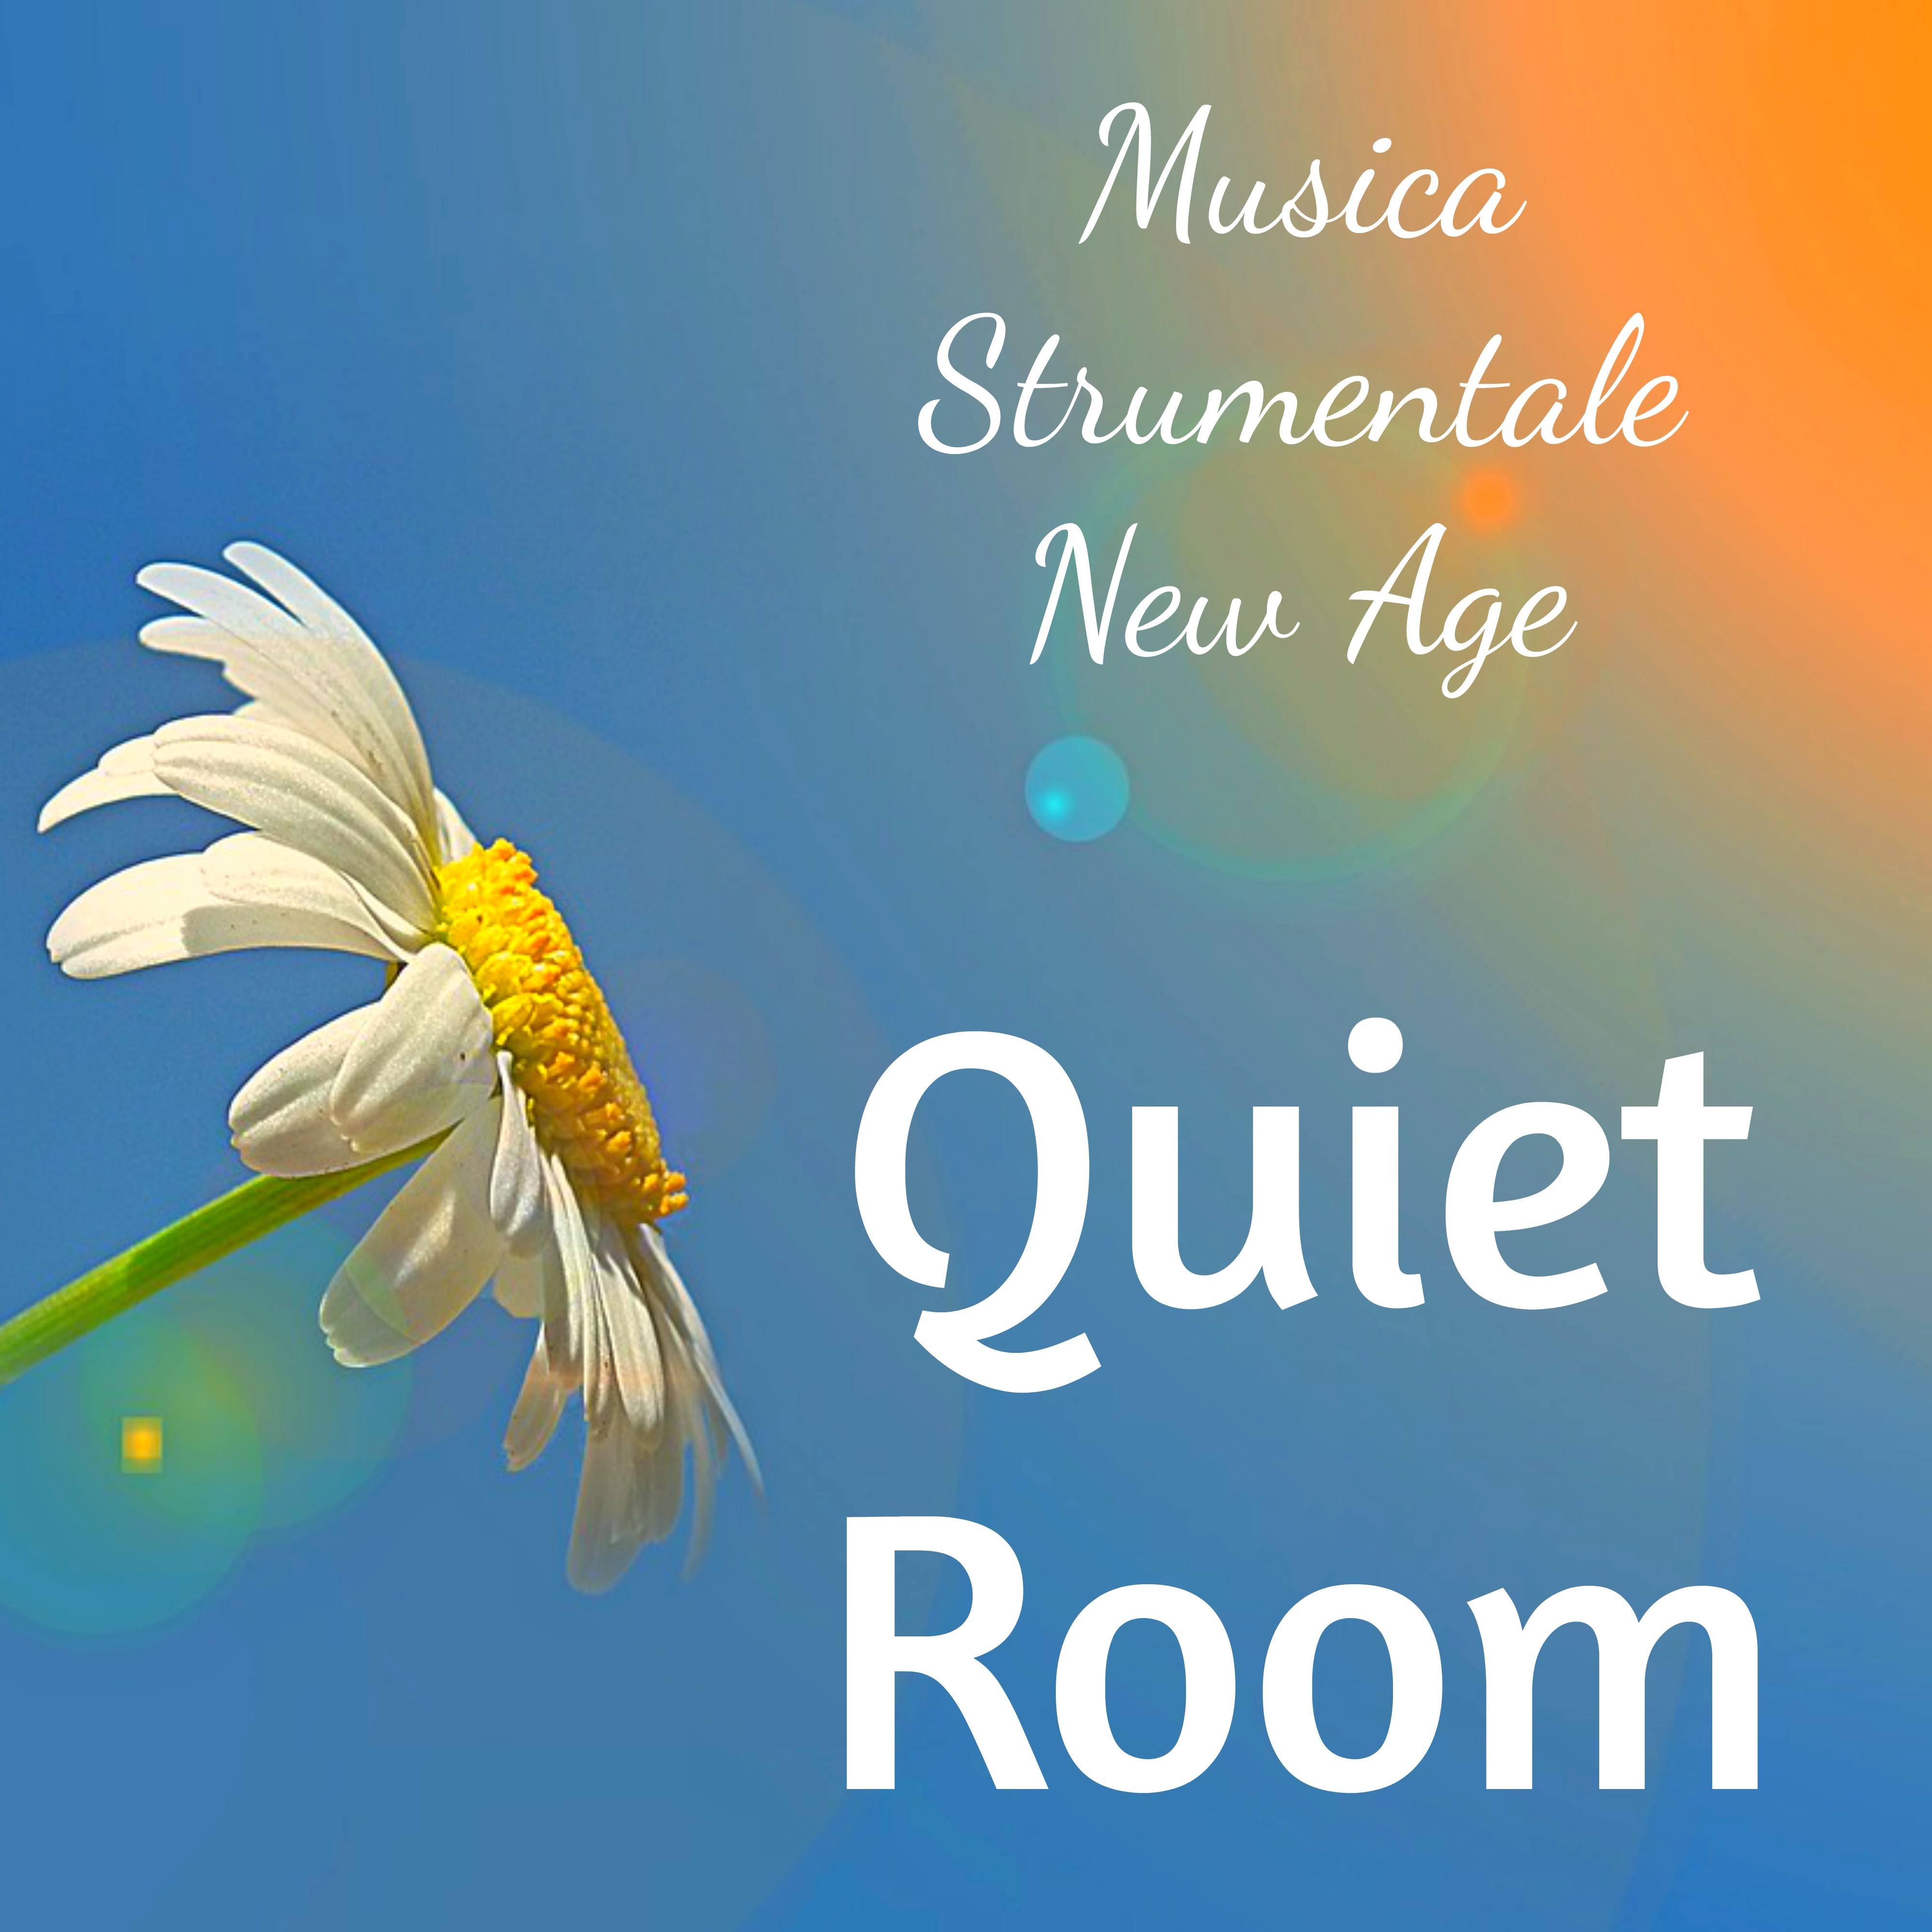 Quiet Room - Musica Strumentale New Age per Profondo Rilassamento Dormire Bene Energia Positiva con Suoni della Natura di Meditazione